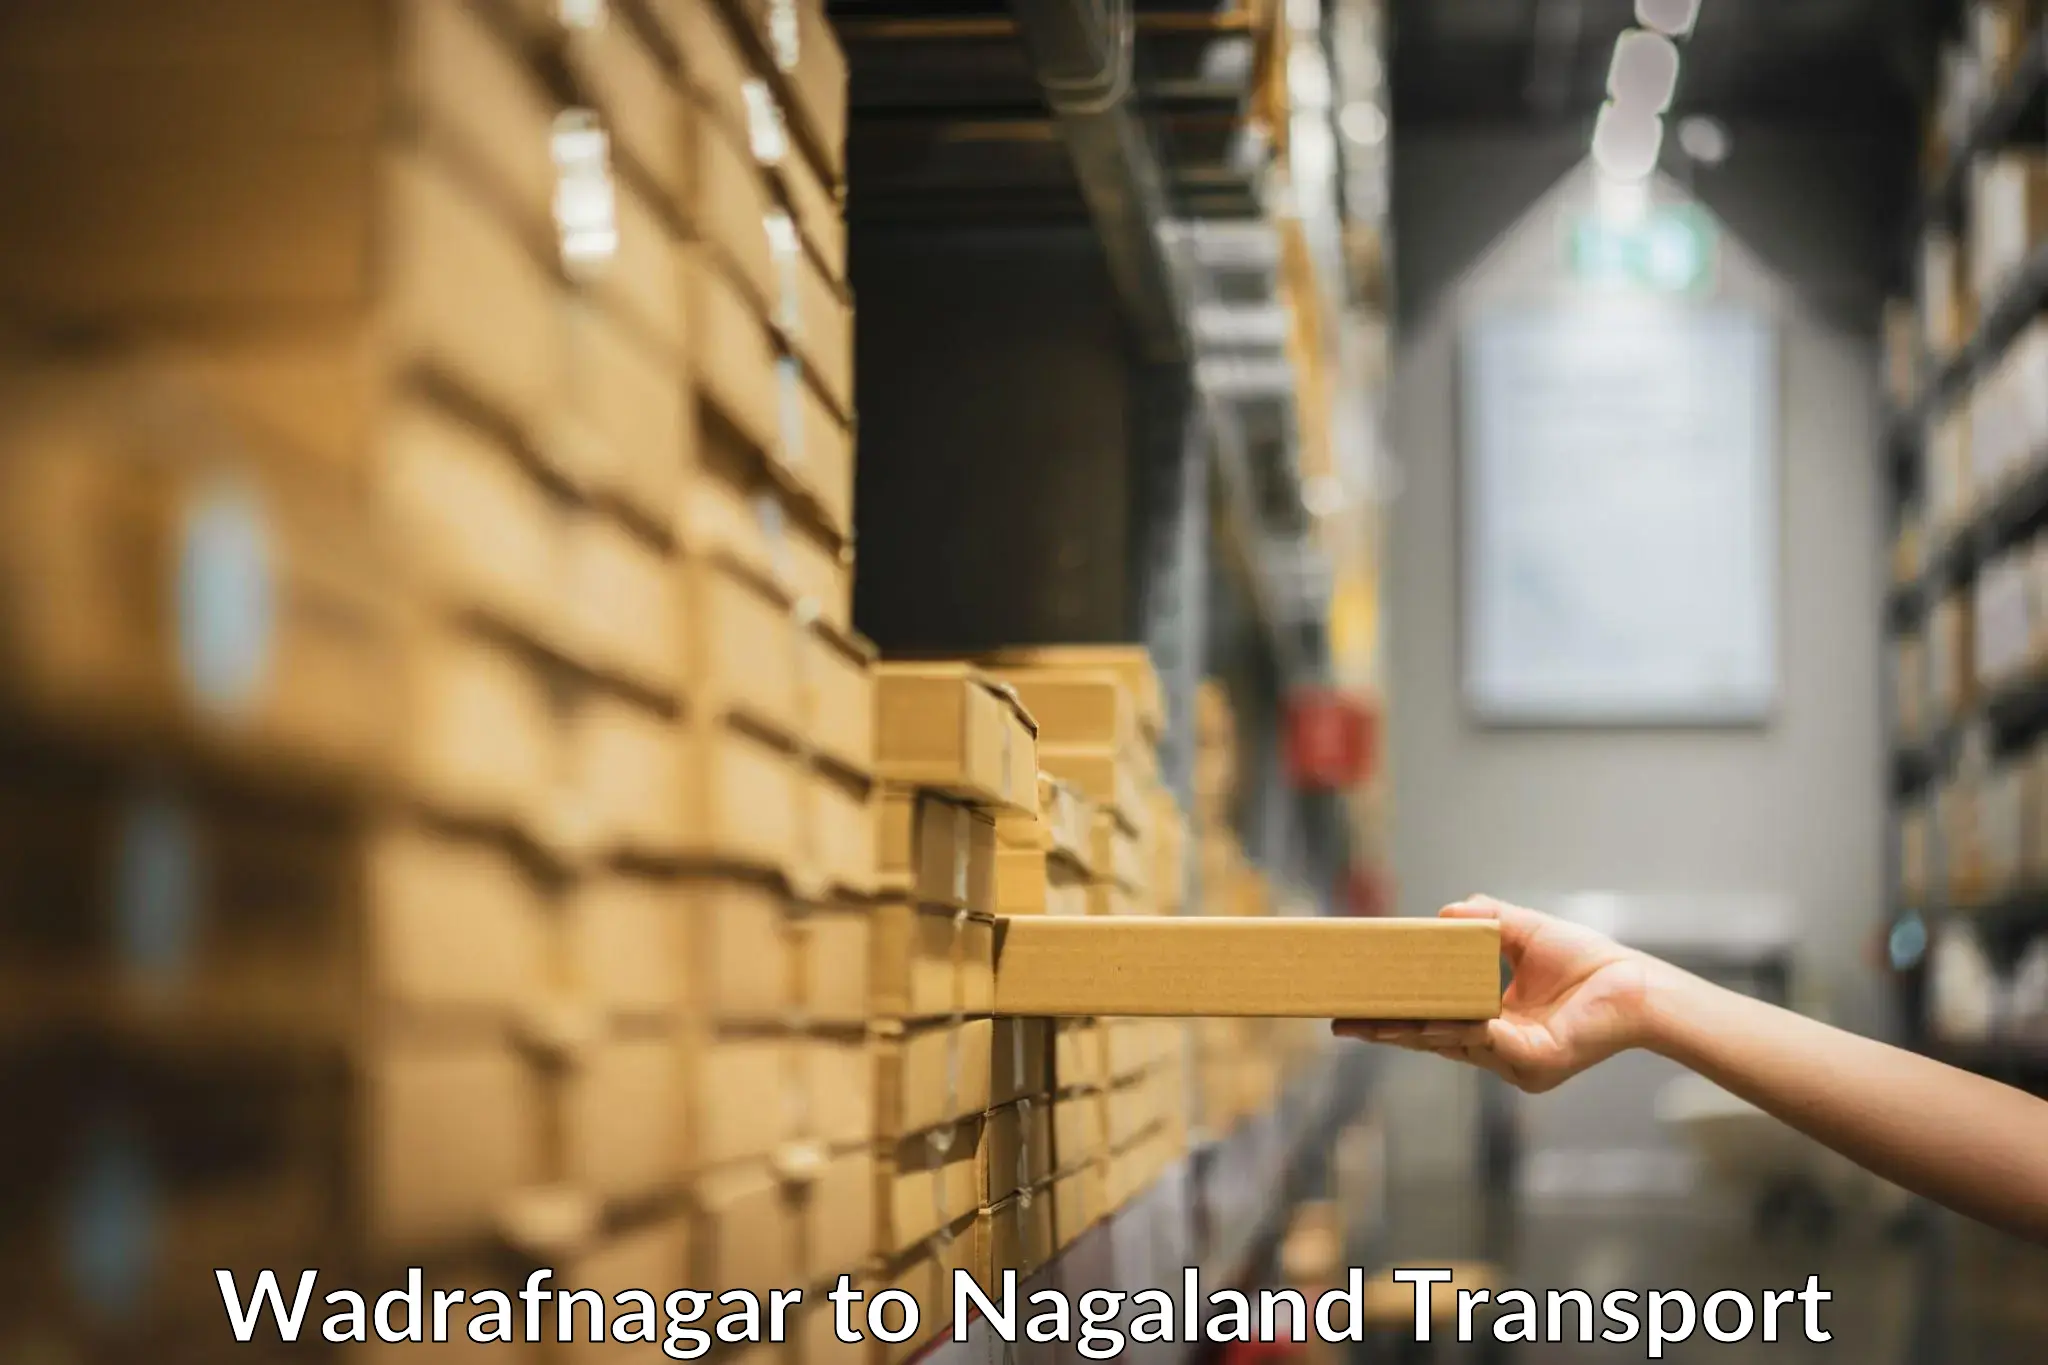 Nationwide transport services Wadrafnagar to Nagaland